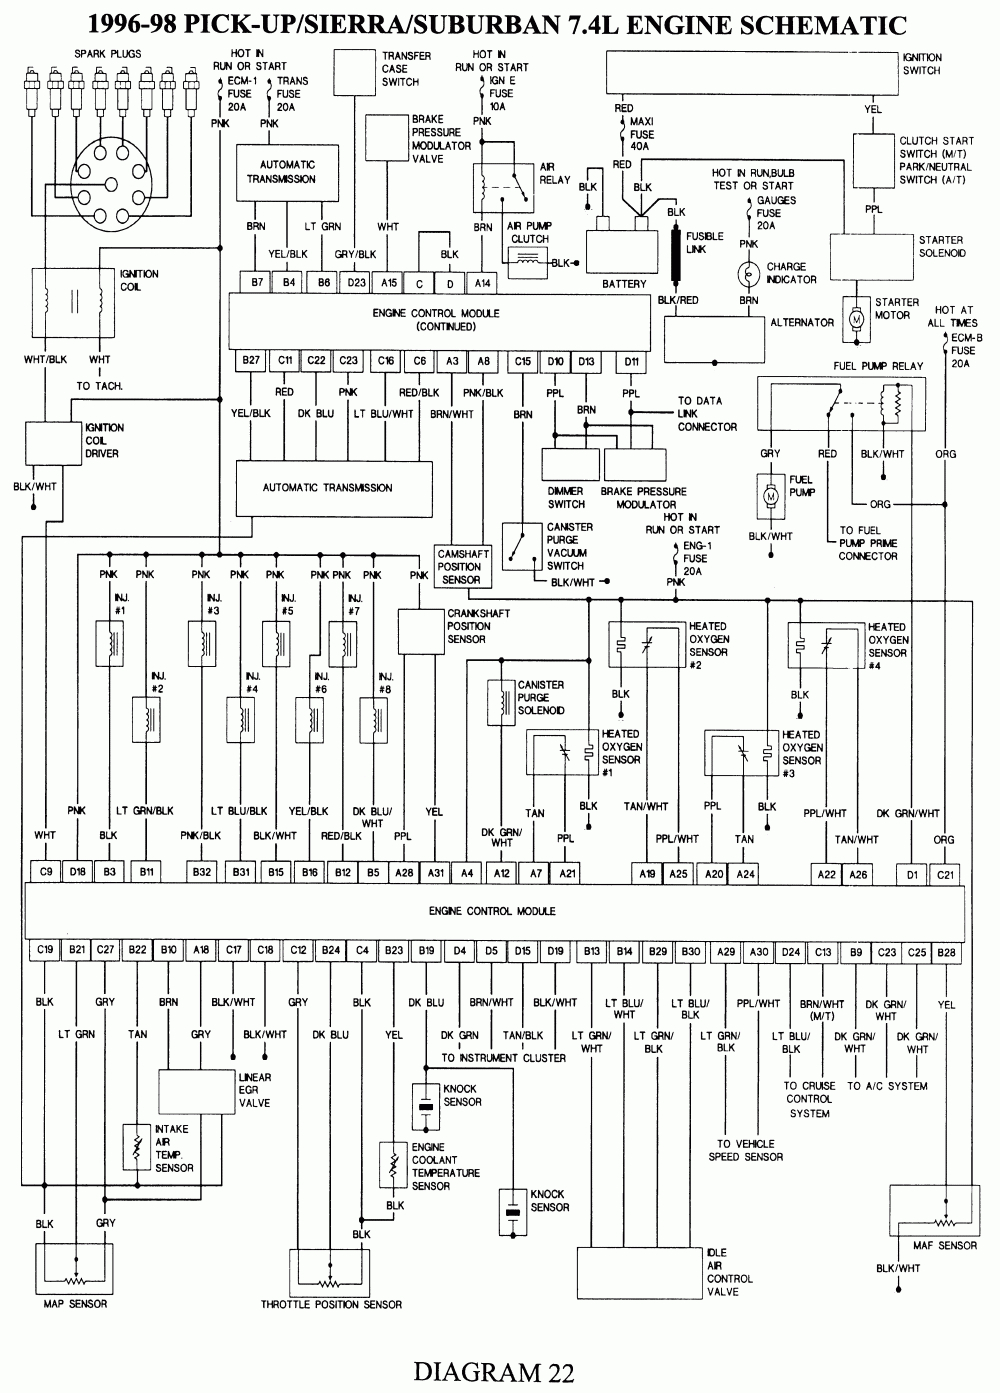 98 Gmc Fuse Diagram - Wiring Diagrams Hubs - 1998 Chevy Silverado Wiring Diagram